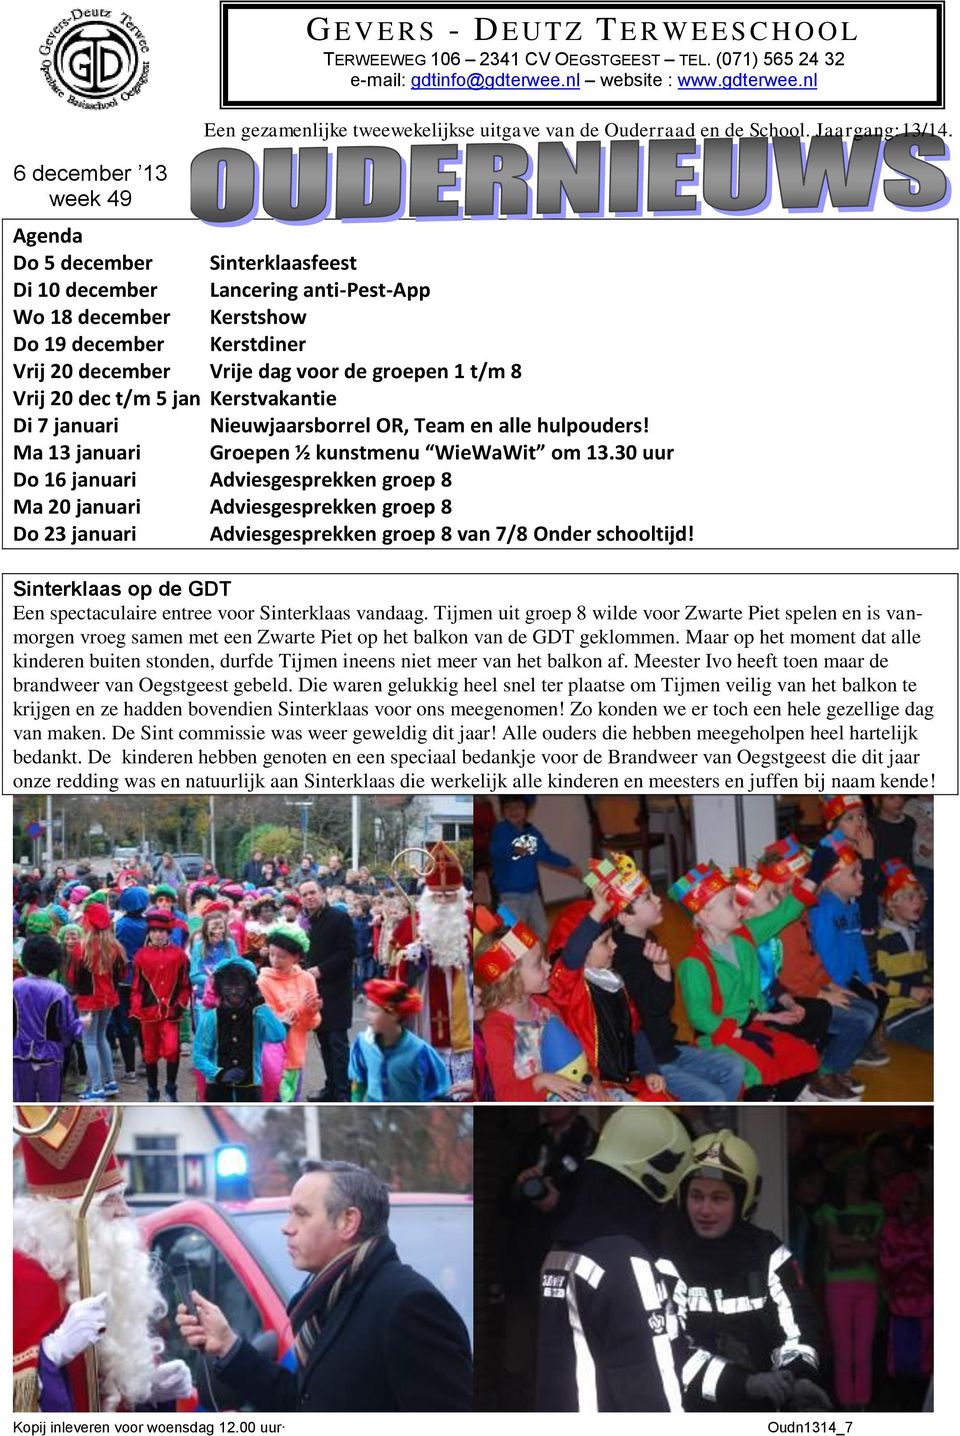 Agenda Do 5 december Sinterklaasfeest Di 10 december Lancering anti-pest-app Wo 18 december Kerstshow Do 19 december Kerstdiner Vrij 20 december Vrije dag voor de groepen 1 t/m 8 Vrij 20 dec t/m 5